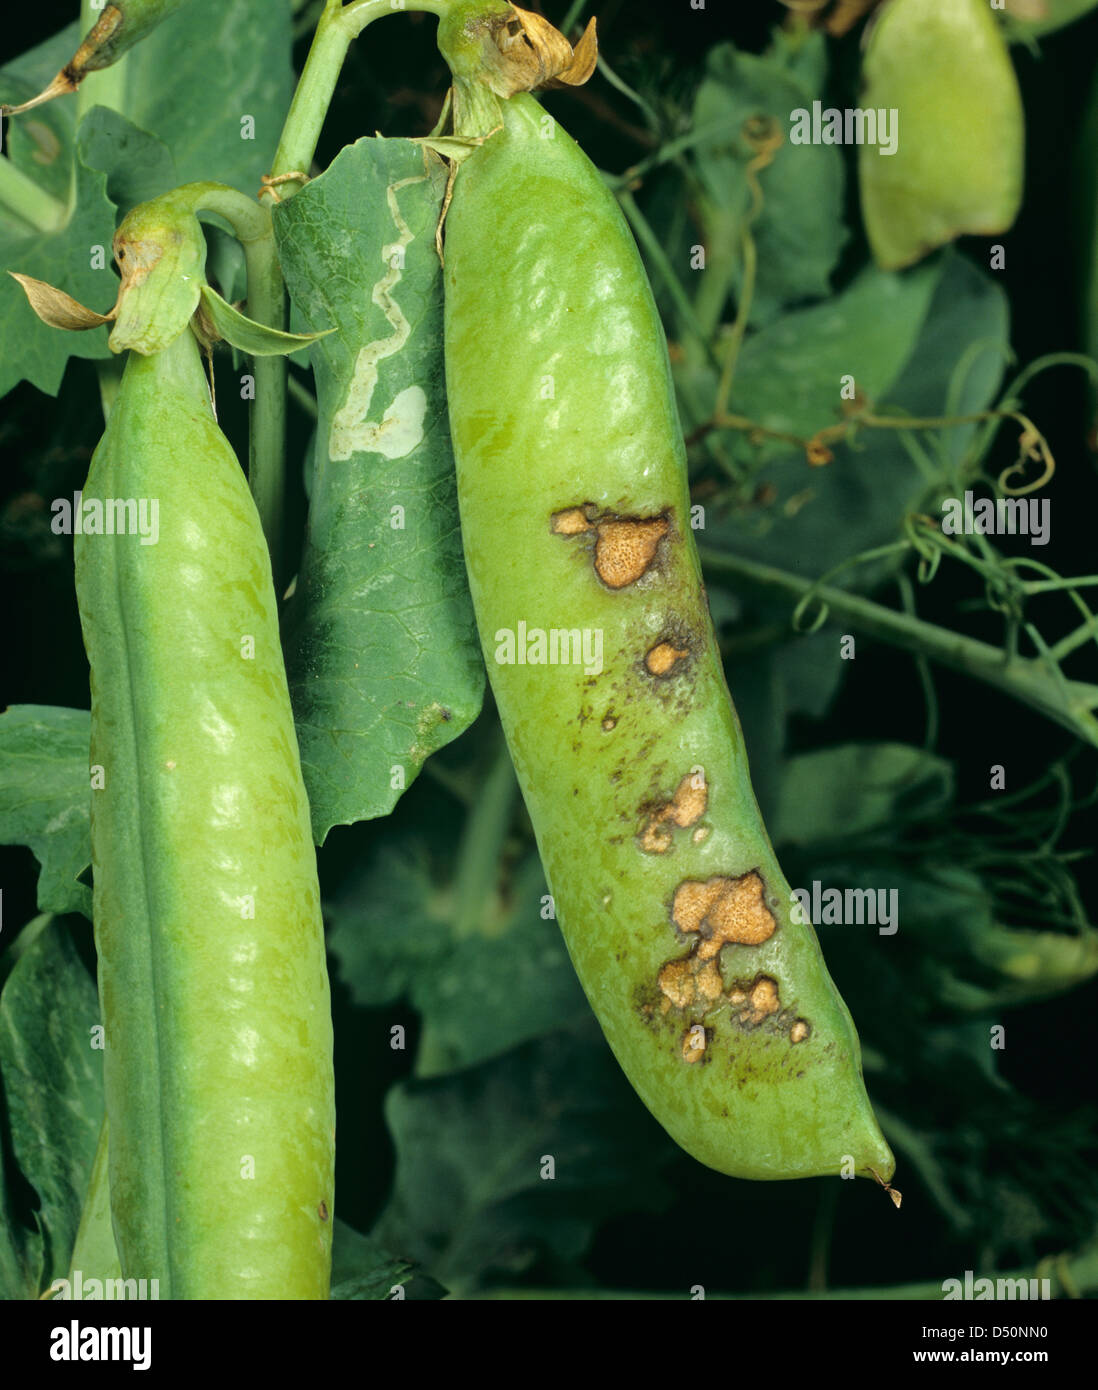 Schmierblutungen, verursacht durch Blattflecken, Ascochyta Pisi auf Erbse Schoten und Blätter Stockfoto